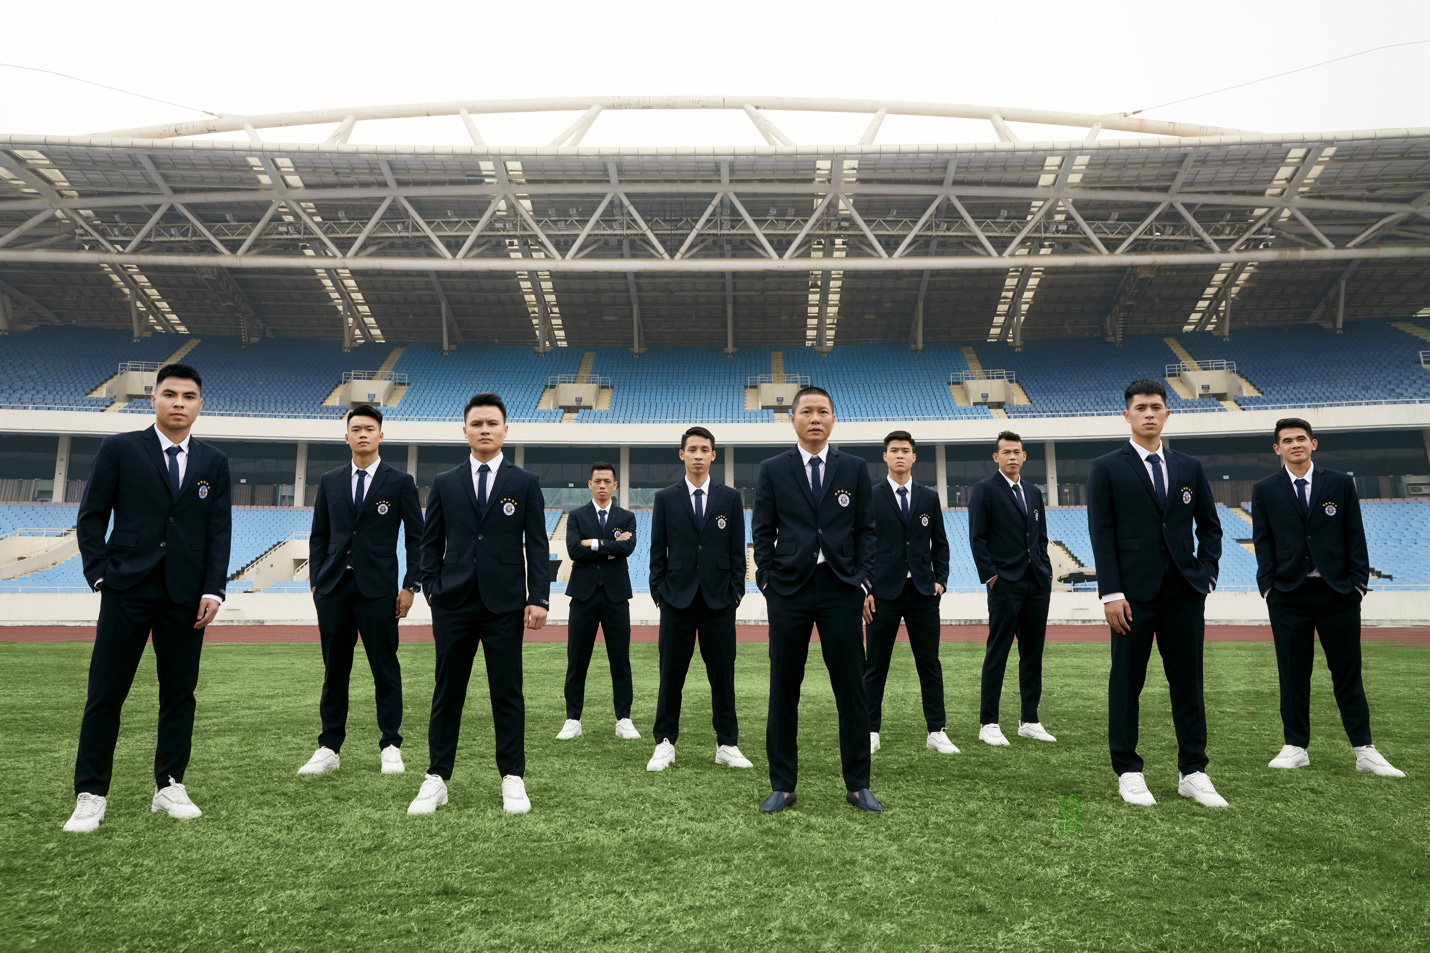 Cùng kỷ niệm 15 năm thành lập, IVY men kết hợp với CLB bóng đá Hà Nội tung bộ ảnh siêu ngầu - Ảnh 2.